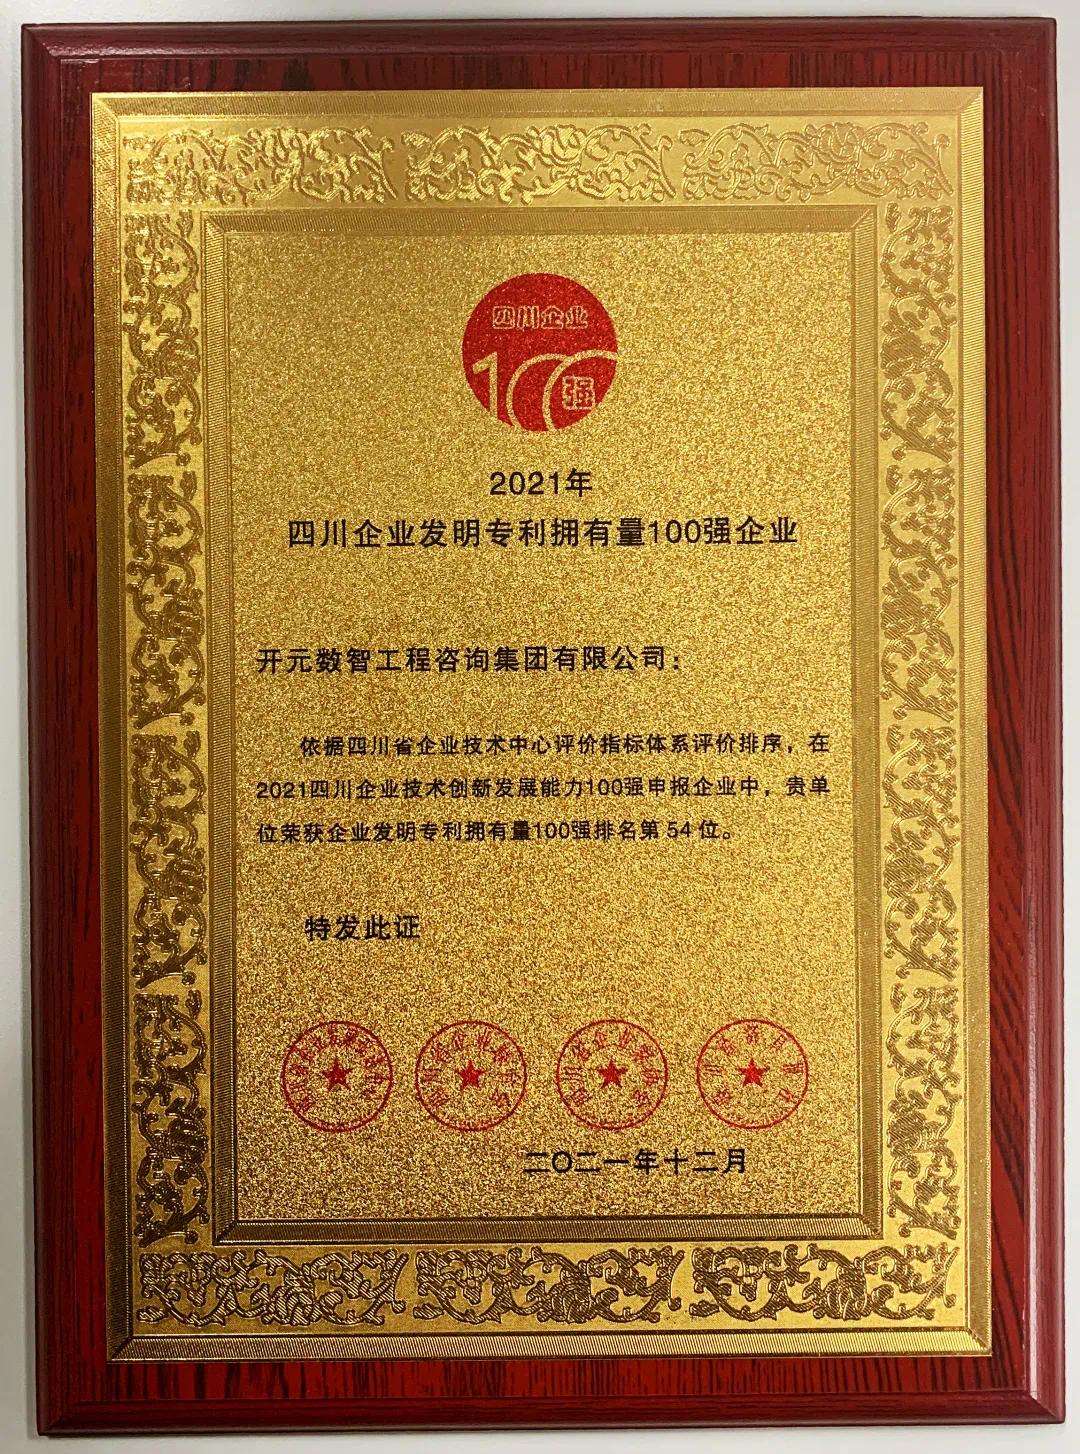 开元咨询集团获评四川企业发明专利拥有量100强企业